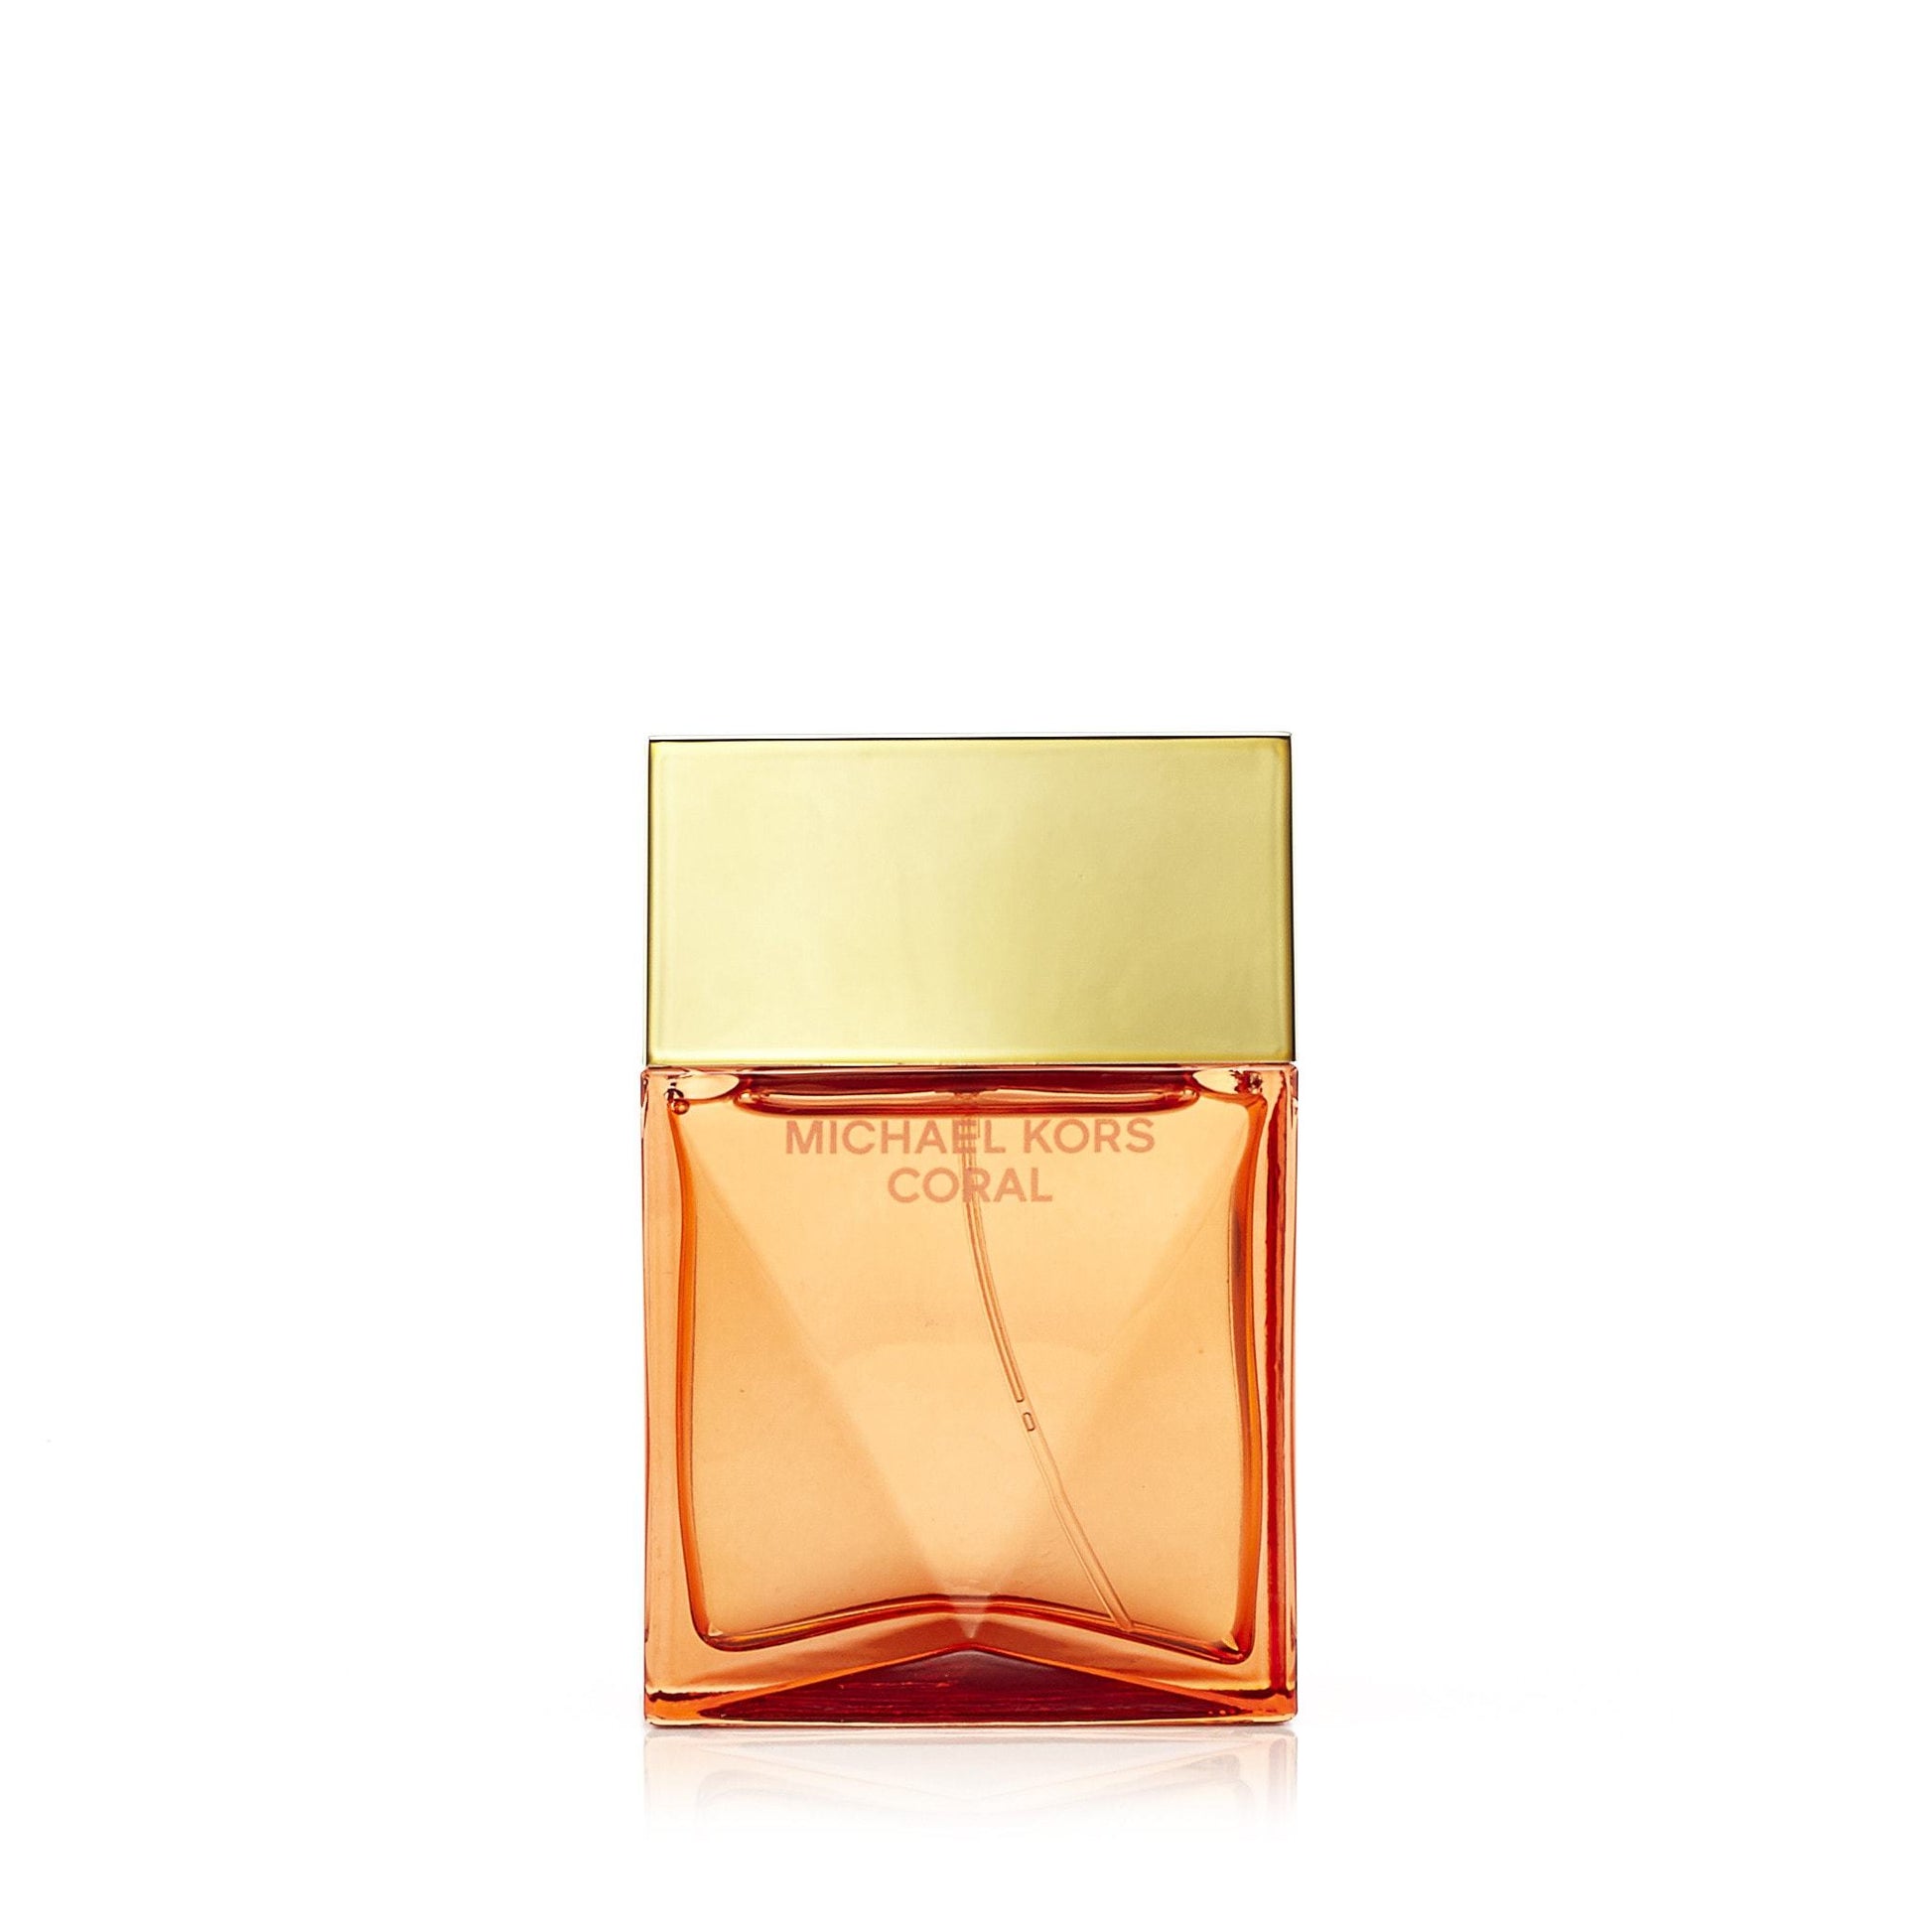 Coral Eau de Parfum Spray for Women by Michael Kors, Product image 3